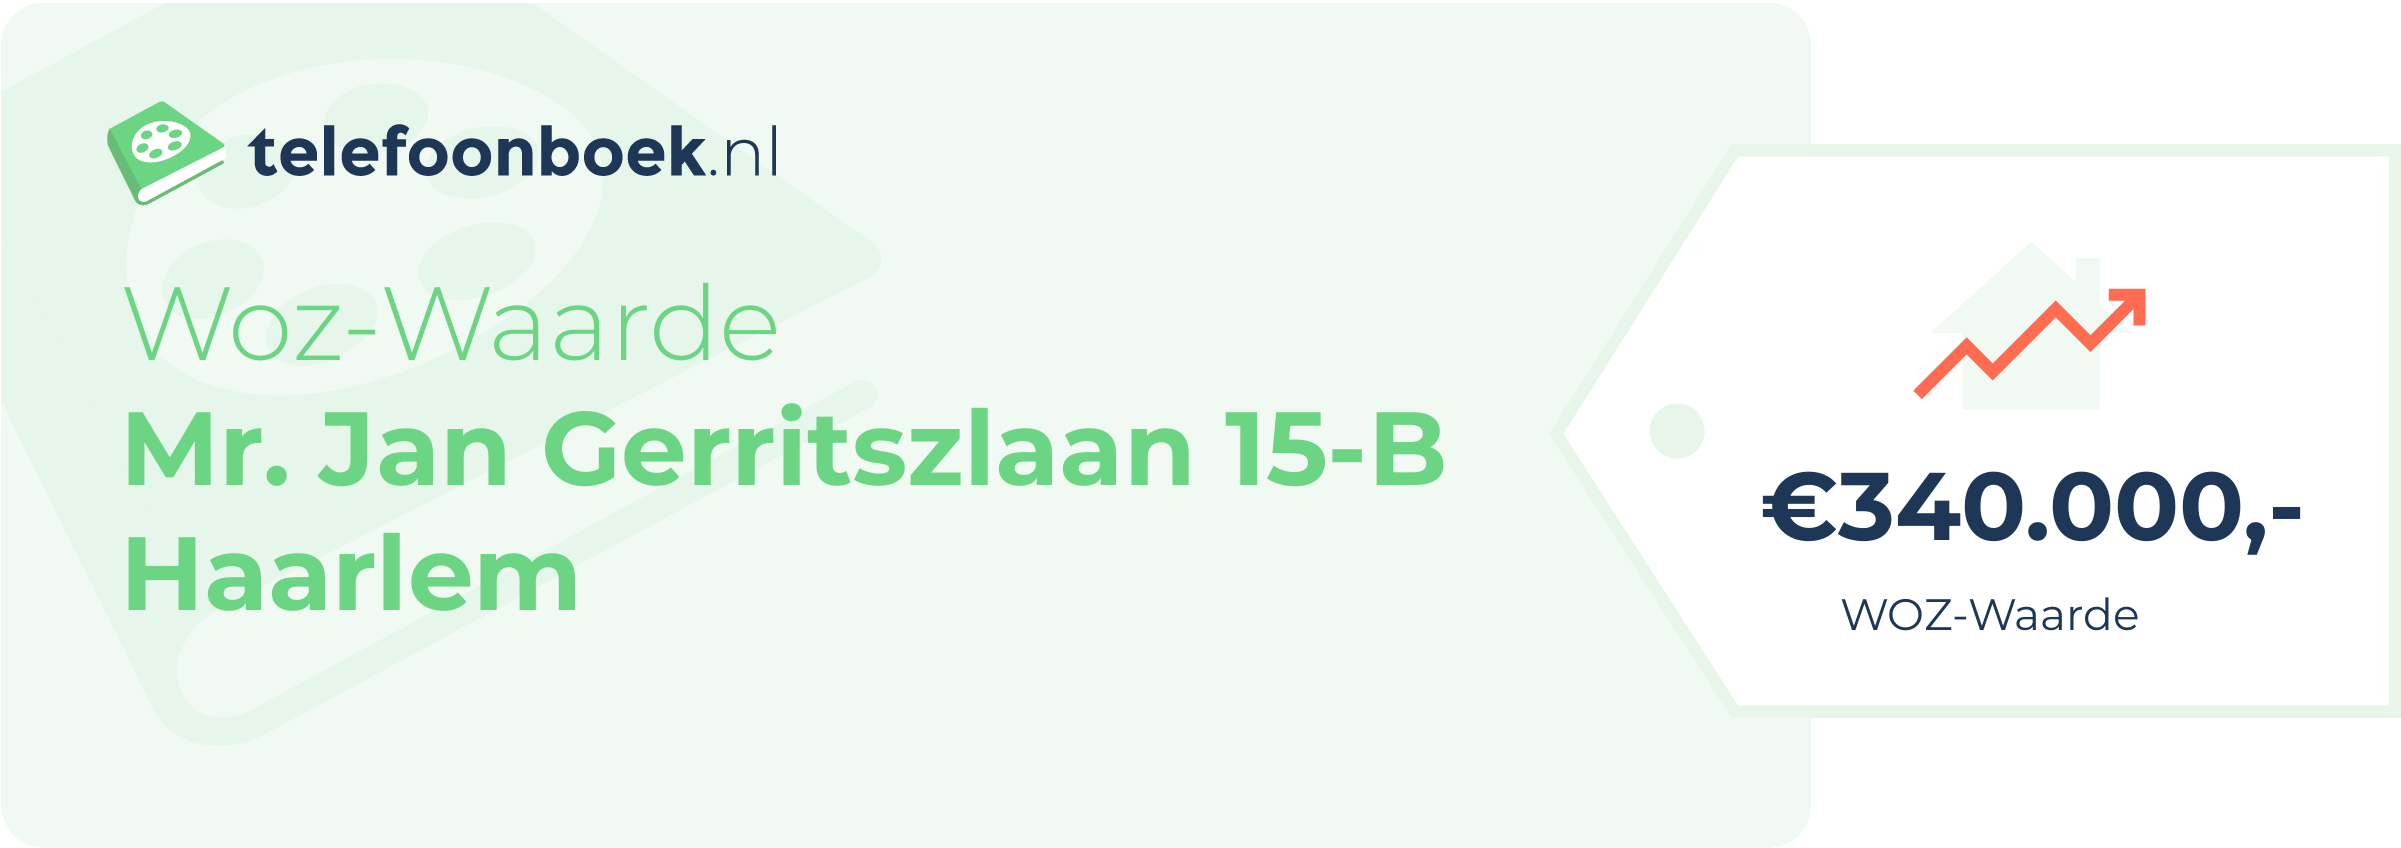 WOZ-waarde Mr. Jan Gerritszlaan 15-B Haarlem